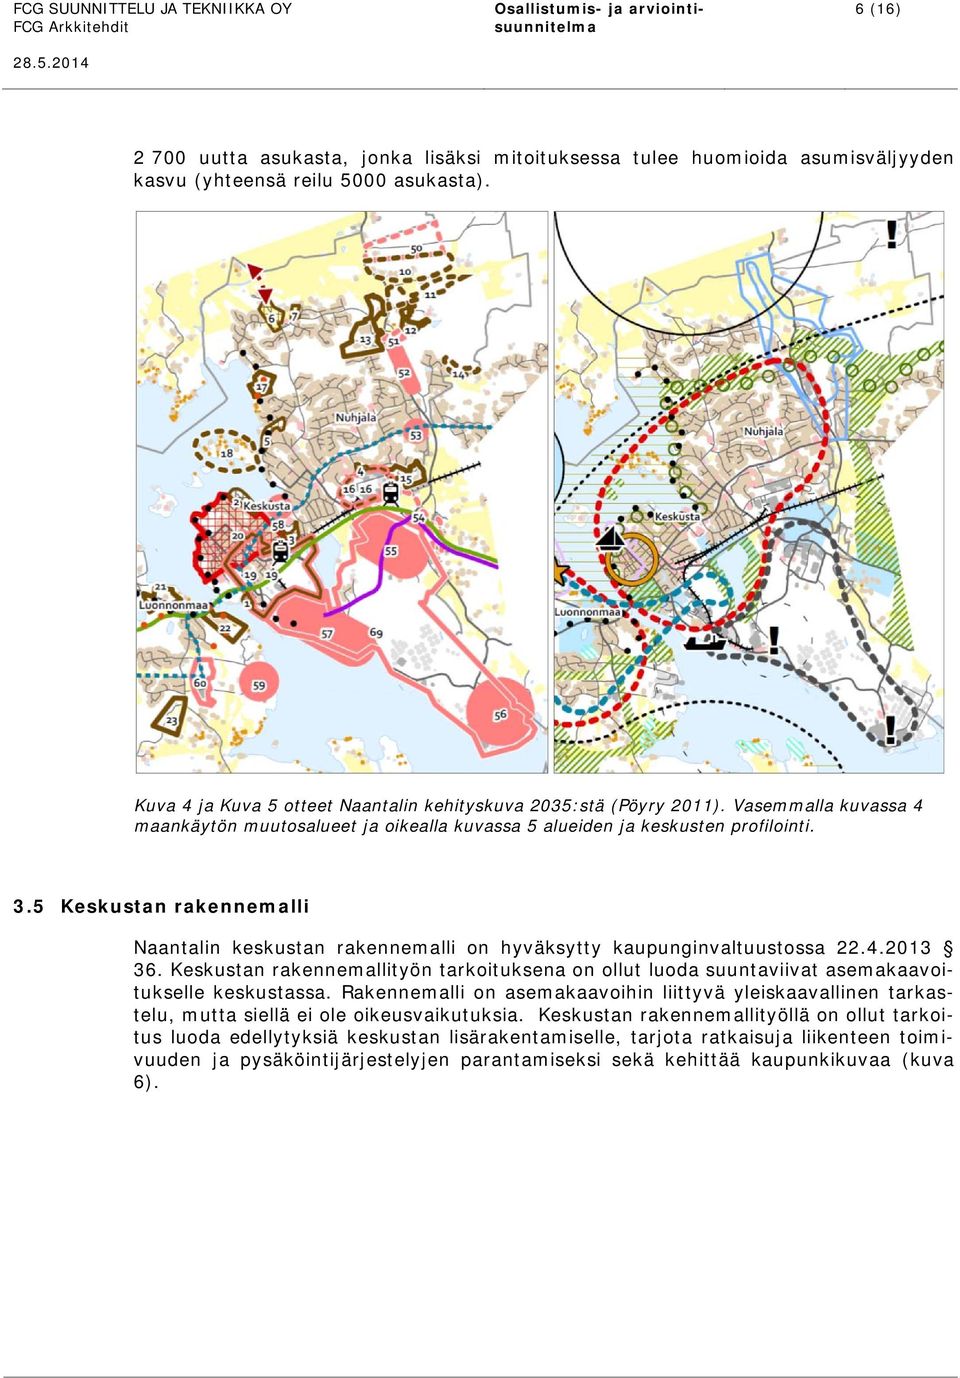 5 Keskustan rakennemalli Naantalin keskustan rakennemalli on hyväksytty kaupunginvaltuustossa 22.4.2013 36.